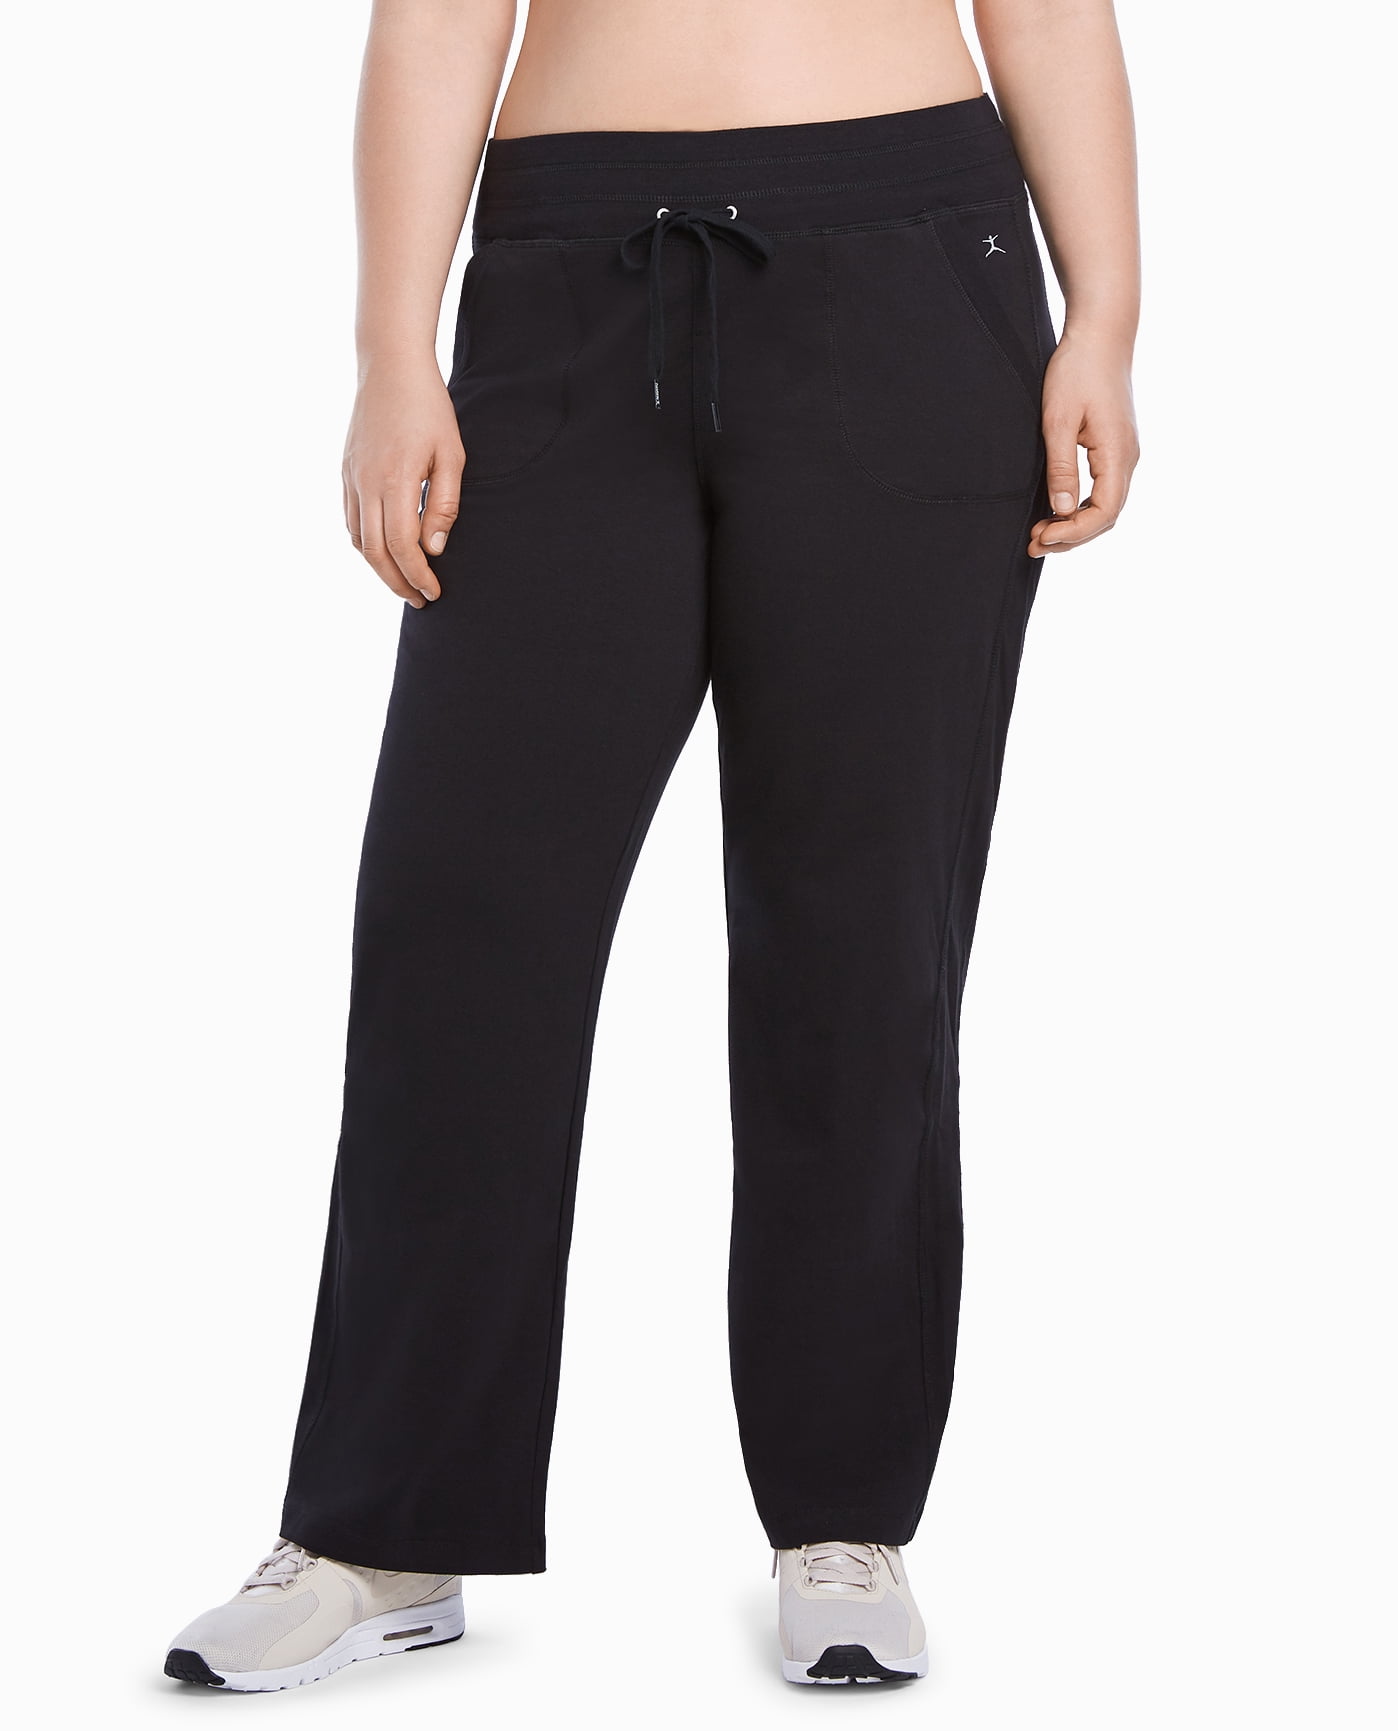 Danskin Now Black Active Pants Size XL - 42% off